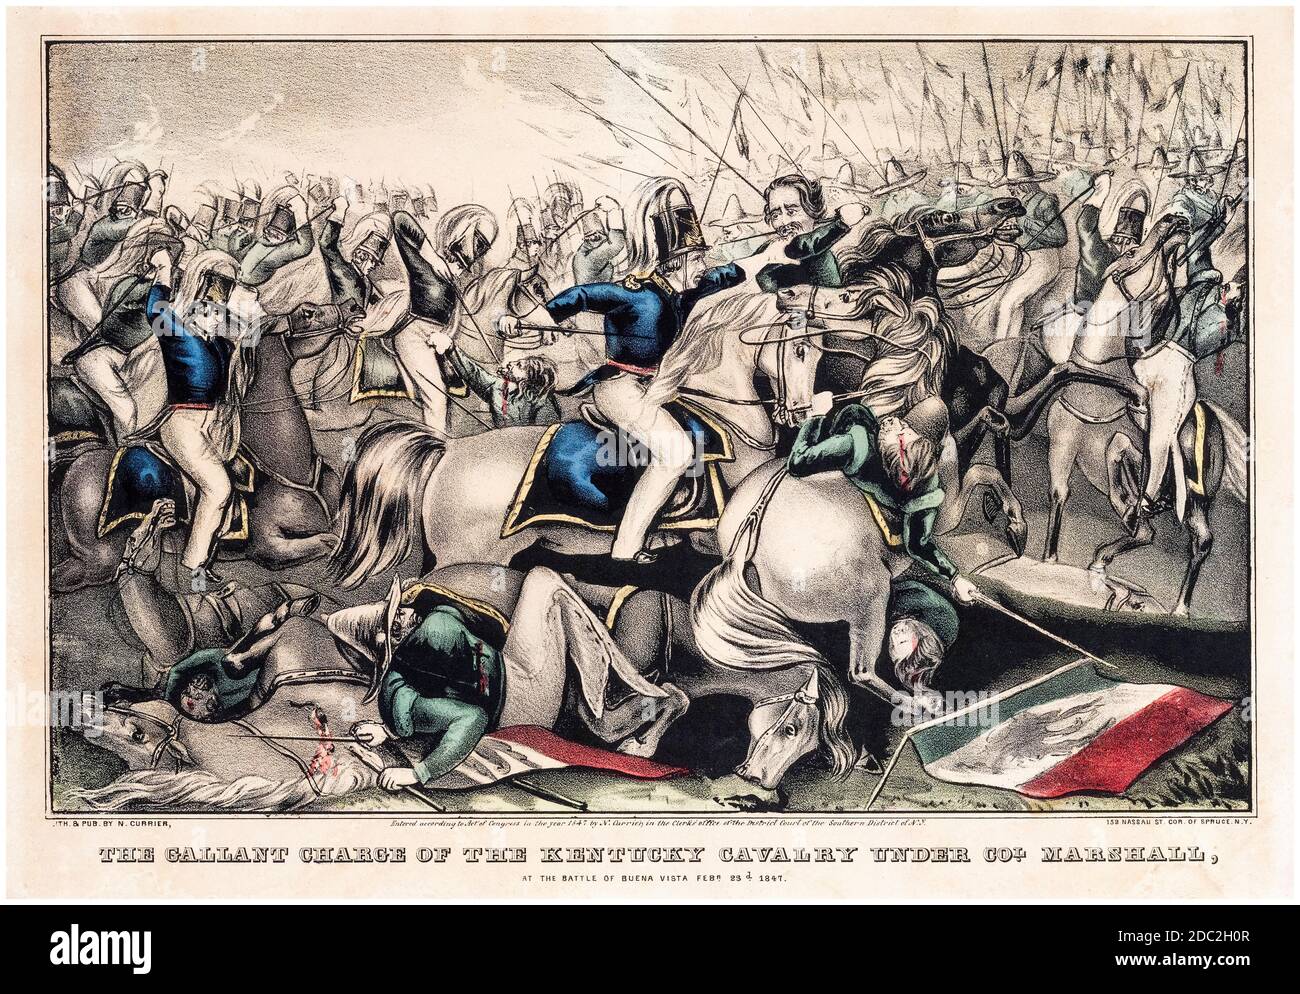 El cargo Galant de la Caballería de Kentucky bajo el Coronel Marshall en la Batalla de buena Vista, 23 de febrero de 1847, (Batalla de Angostura), Guerra México-Americana (1846-1848), impreso por Nathaniel Currier, 1847 Foto de stock